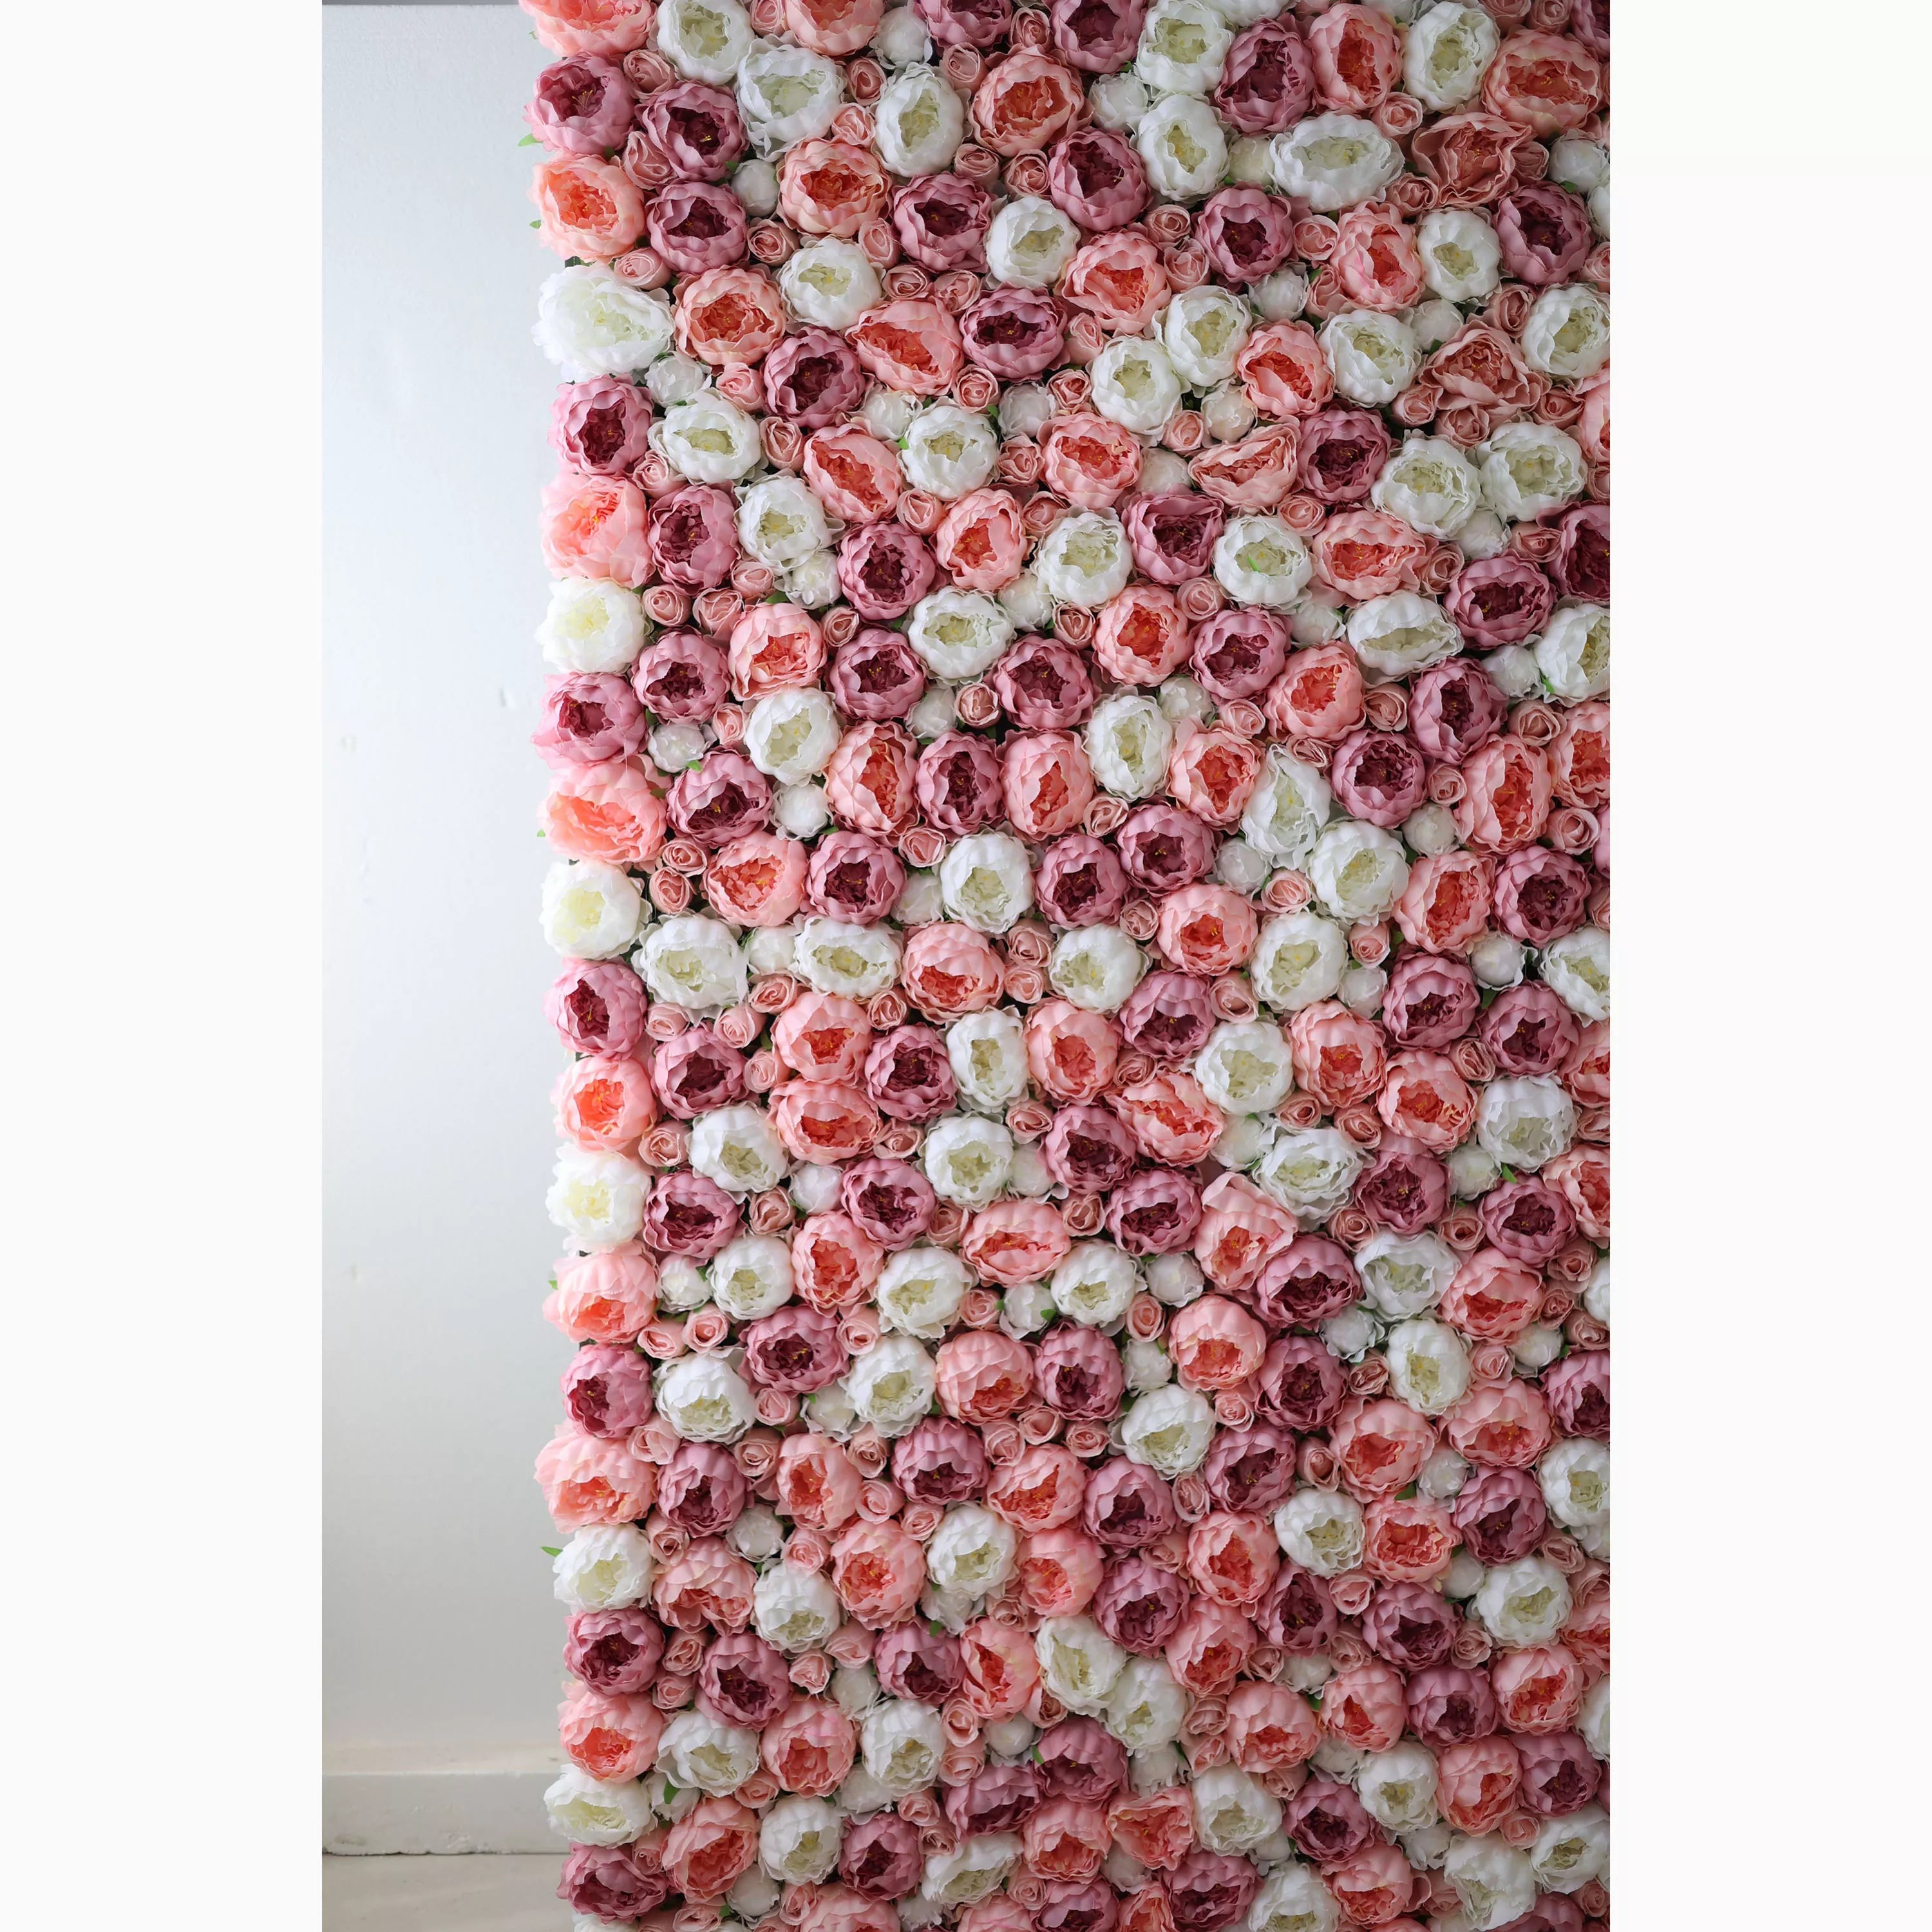 Valar Flowers présente : Blush and Whisper – Un assemblage de rêve de roses en tissu rose clair et crème – Mur floral parfait pour les mariages, les événements et la décoration intérieure élégante.-VF-216